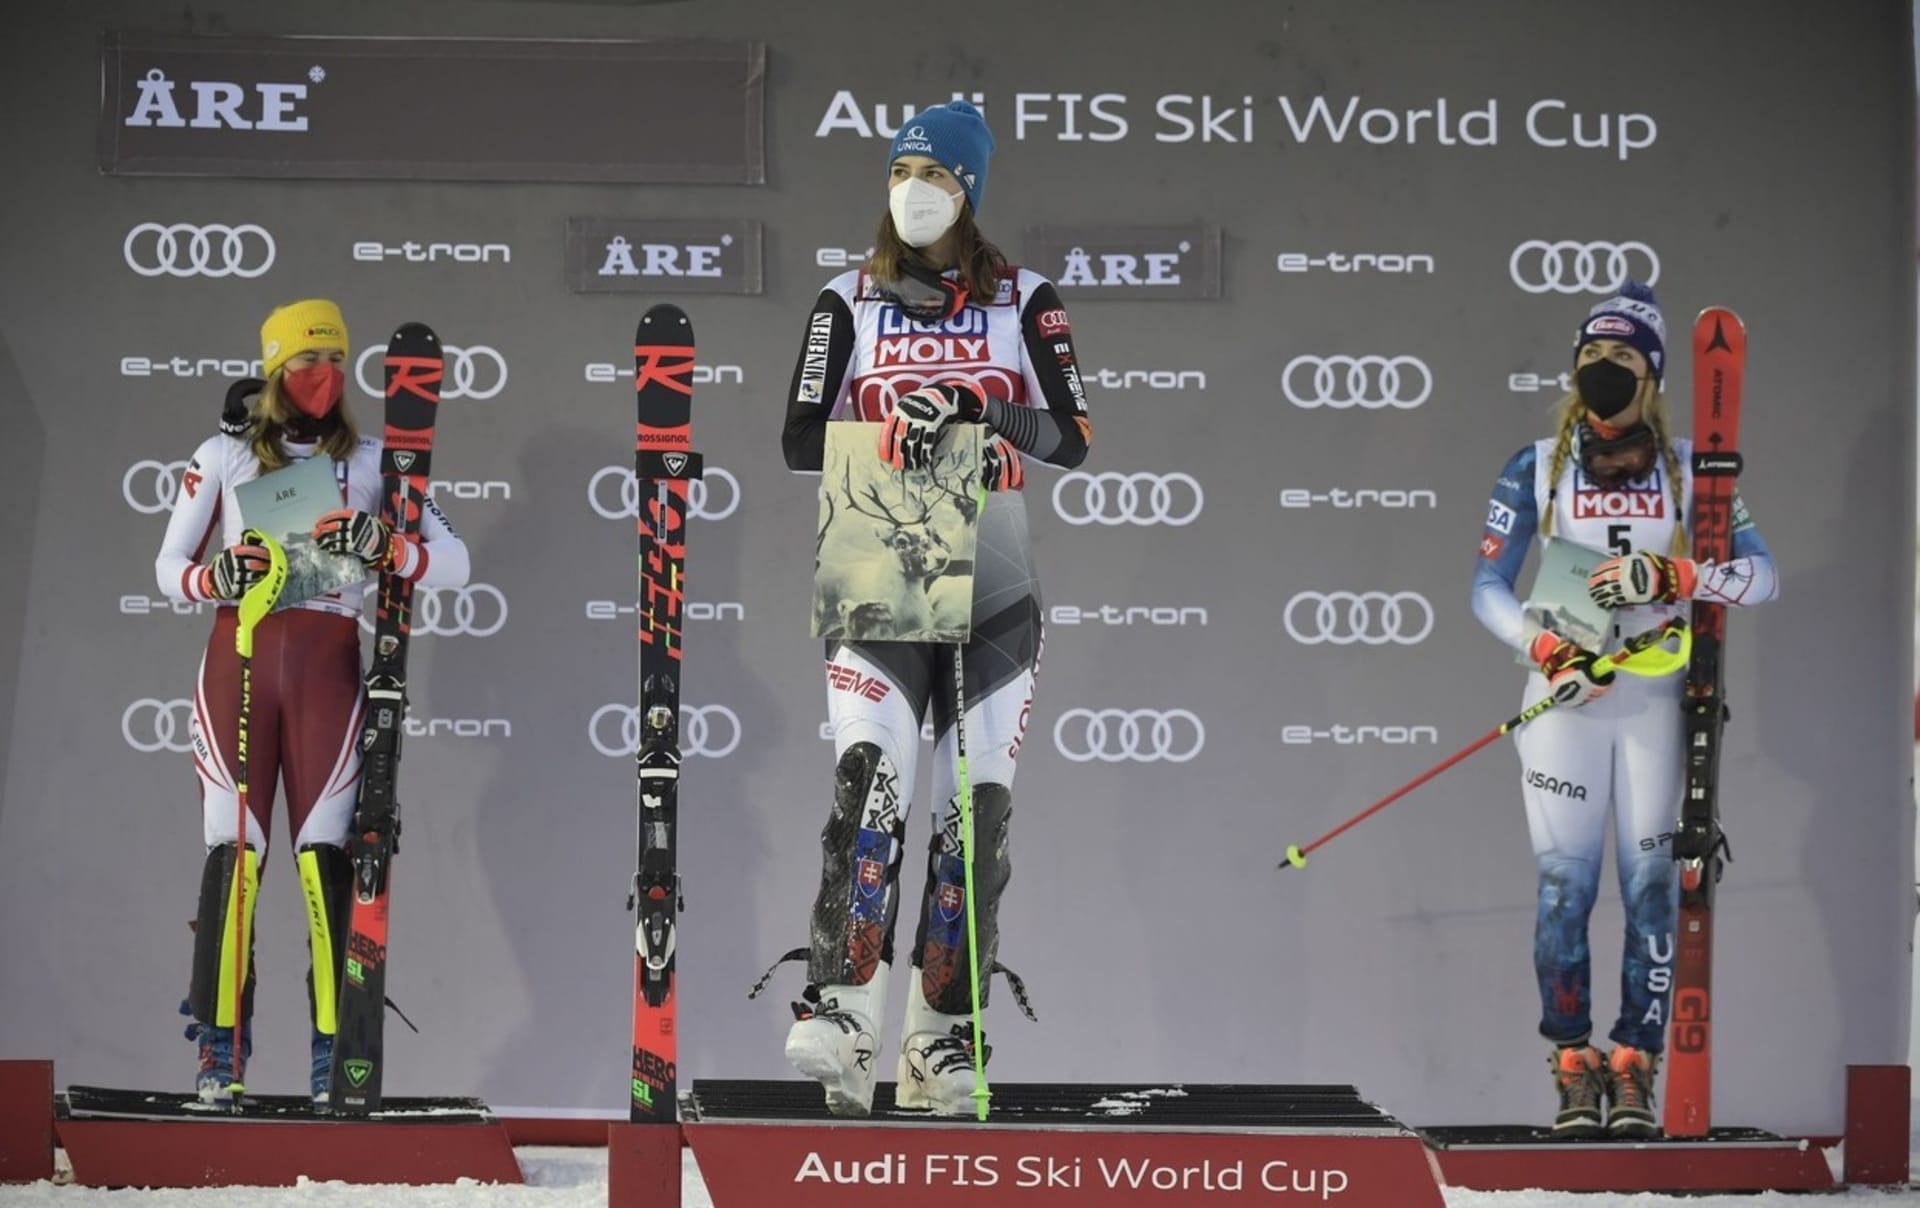 Fotografie z ceremoniálu v re. Petra Vlhová zde vyhrála čtvrtý slalom v sezoně, na pódiu ji doplnily druhá Katharina Liensbergerová a třetí Mikaela Shiffrinová.